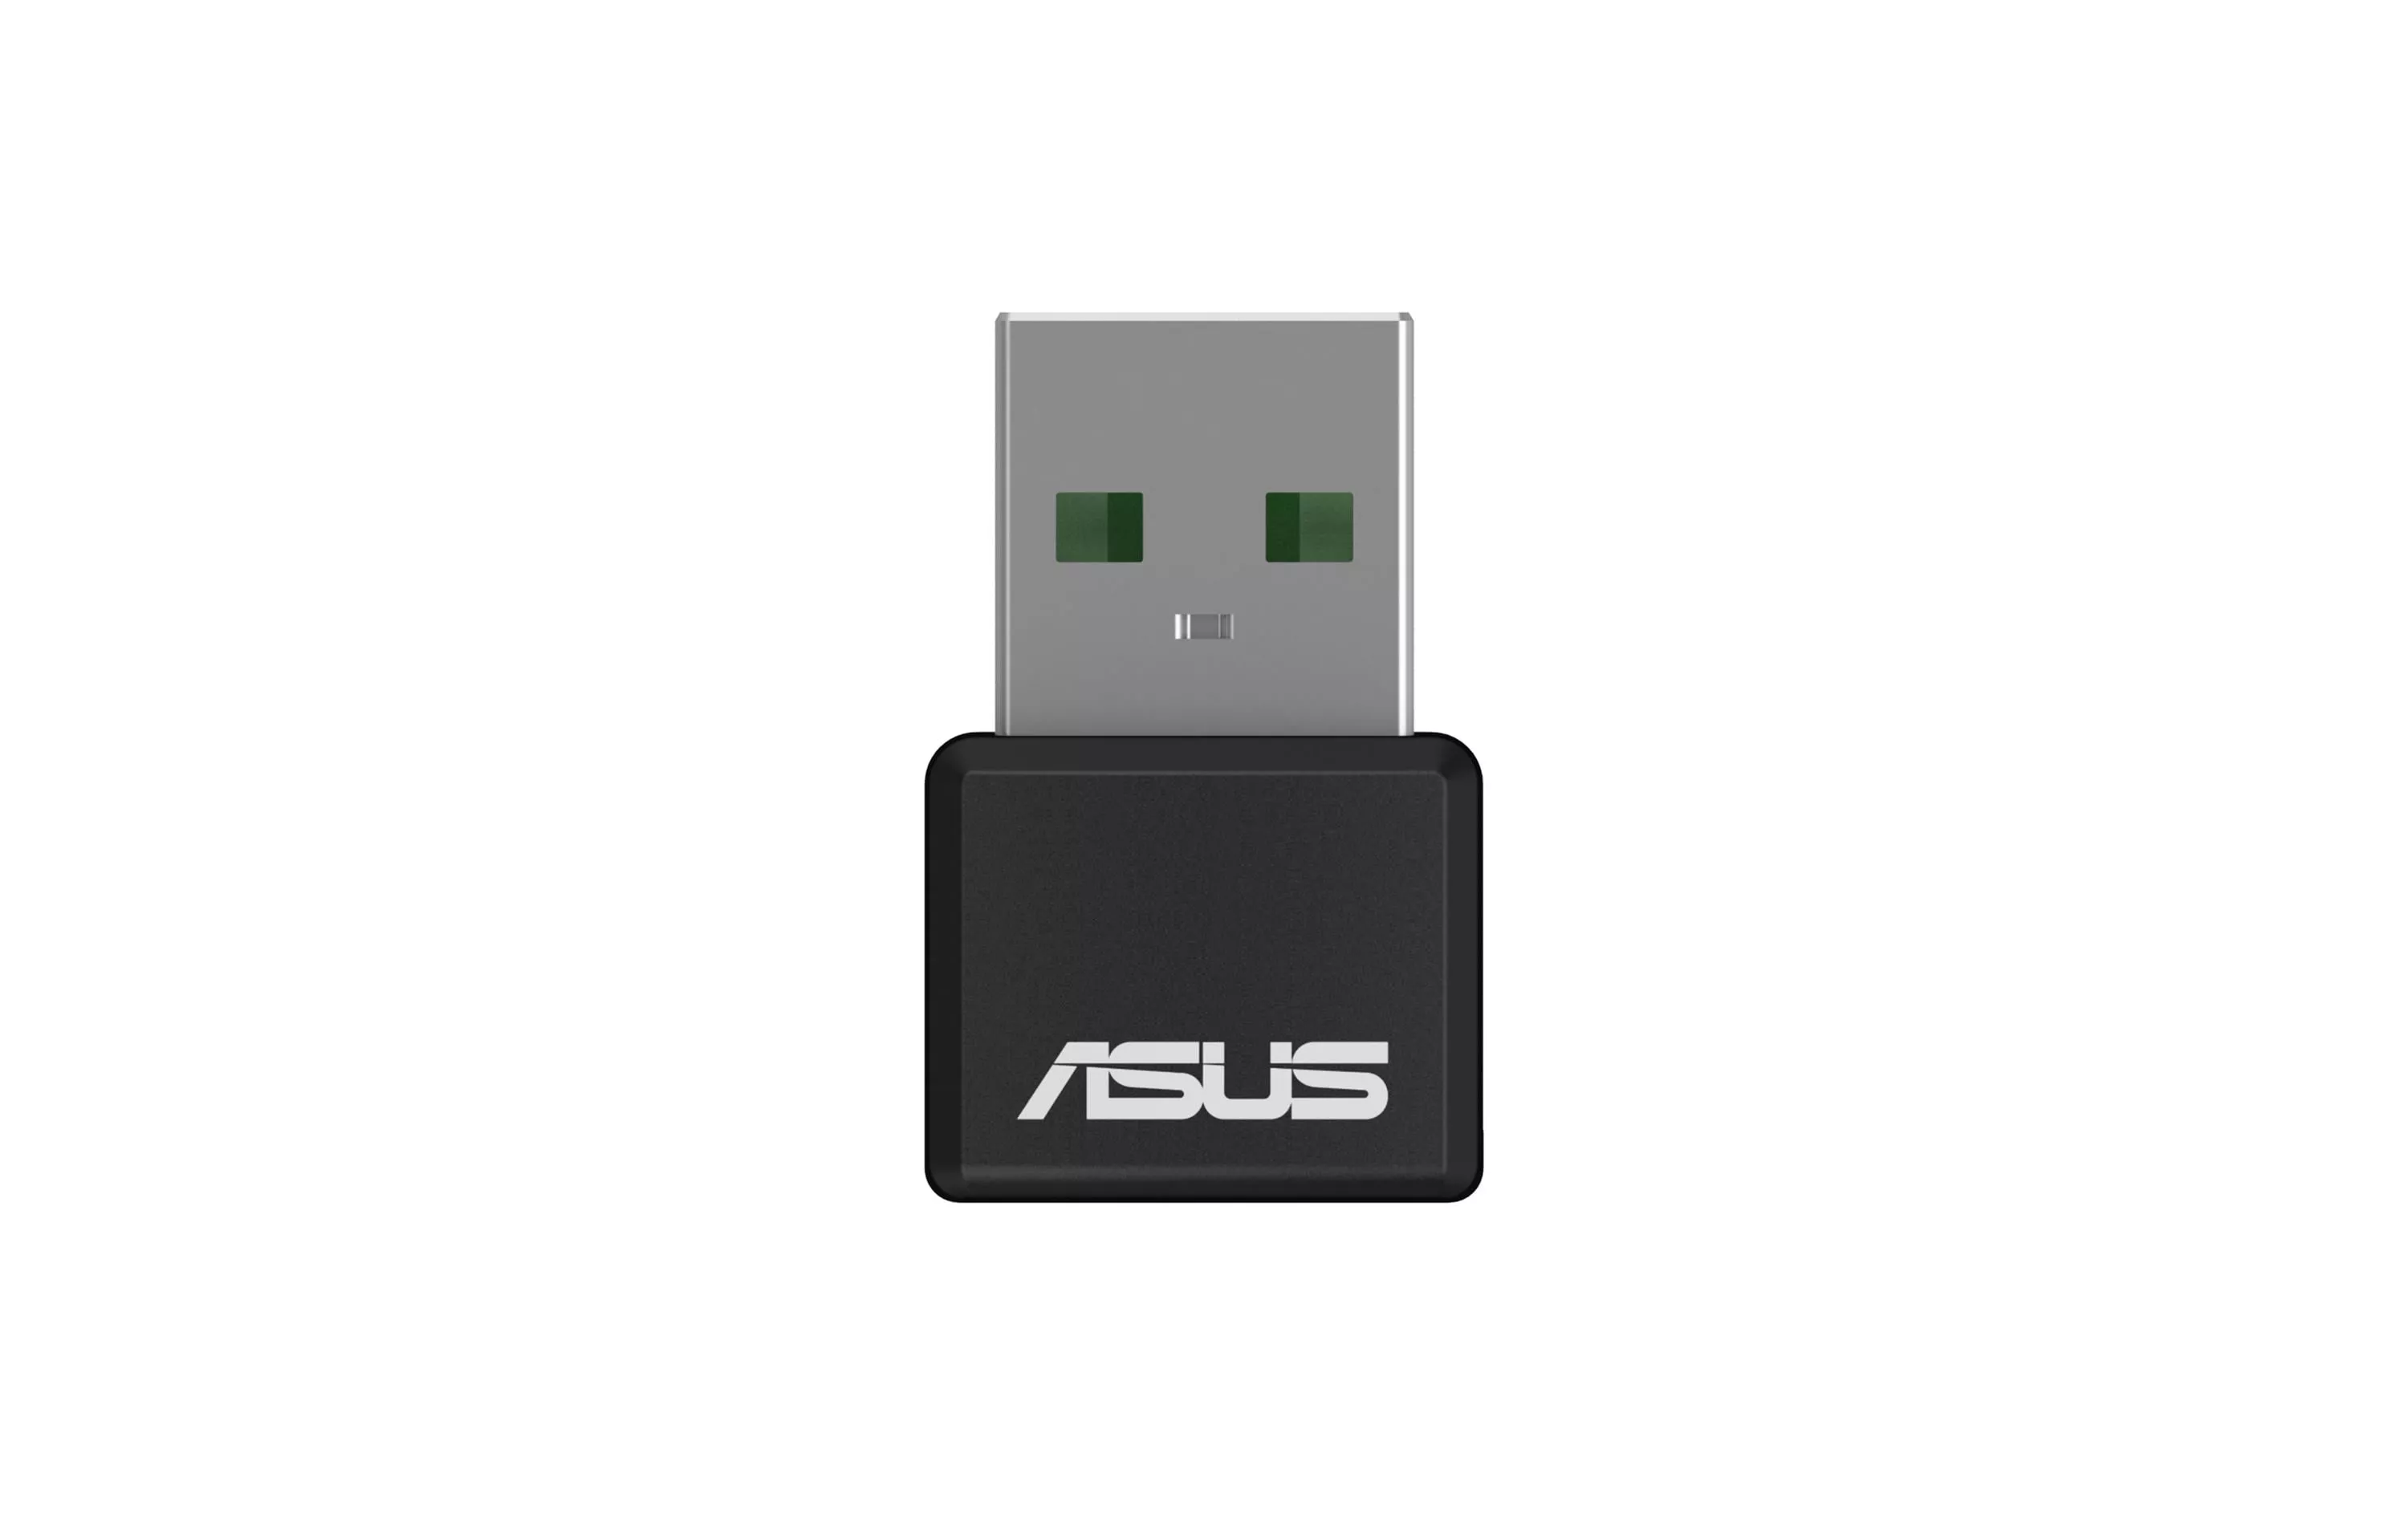 WLAN-AX USB-Stick USB-AX55 Nano